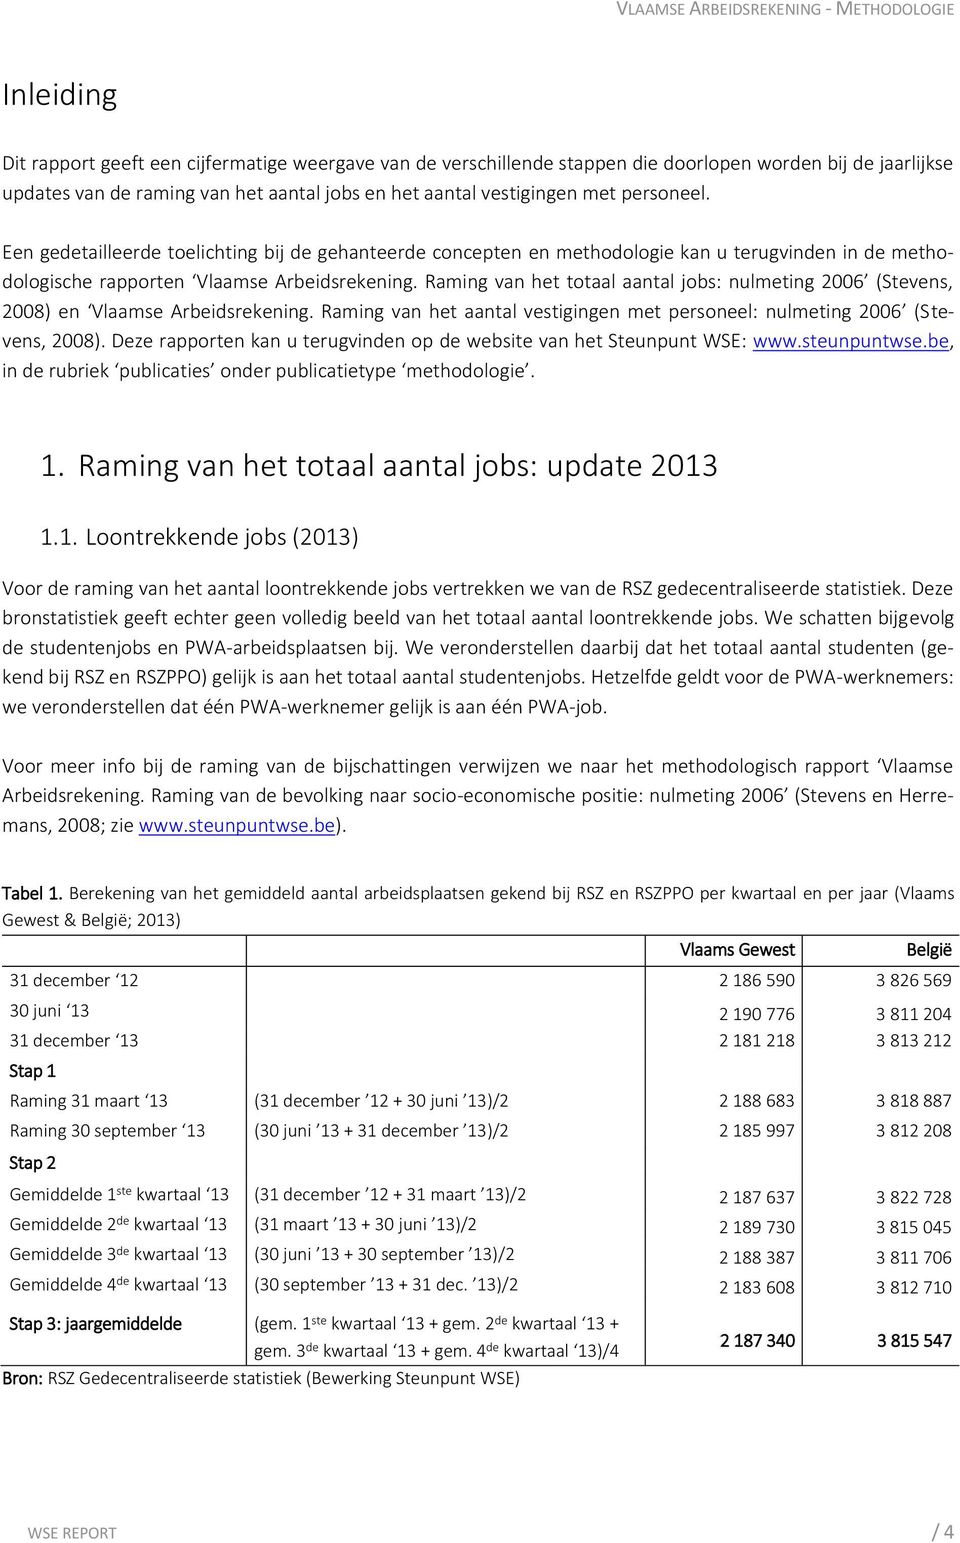 Raming van het totaal aantal jobs: nulmeting 2006 (Stevens, 2008) en Vlaamse Arbeidsrekening. Raming van het aantal vestigingen met personeel: nulmeting 2006 (Stevens, 2008).